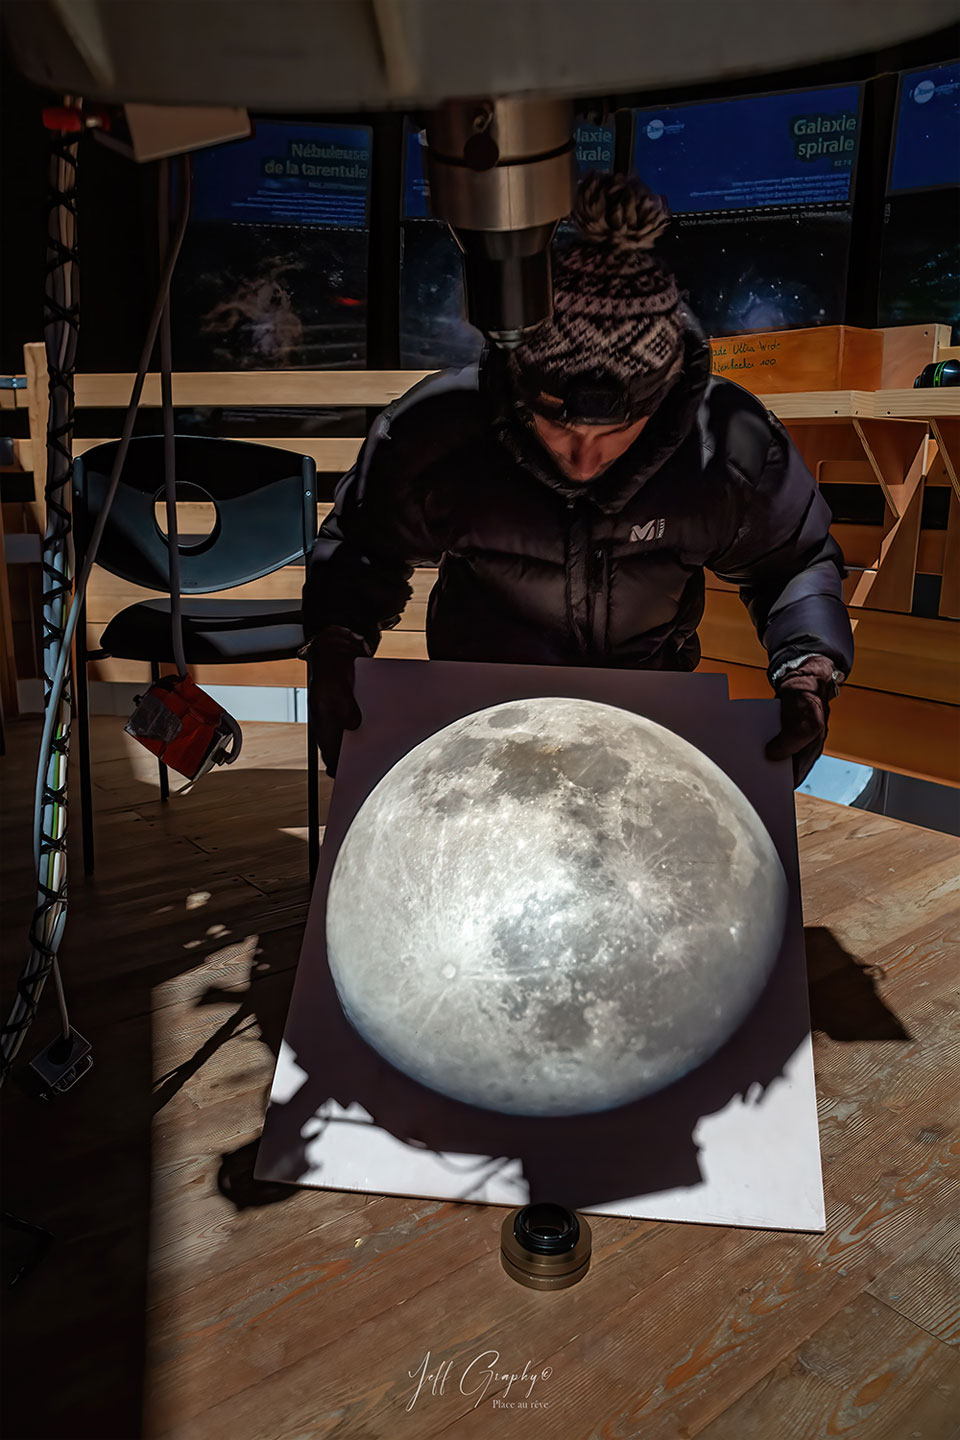 Prezentowane zdjęcie ukazuje bezpośrednią projekcję ostatniej pełni księżyca, zarejestrowaną przez średniej wielkości teleskop, znajdujący się wysoko w Alpach Francuskich.
Więcej szczegółowych informacji w opisie poniżej.